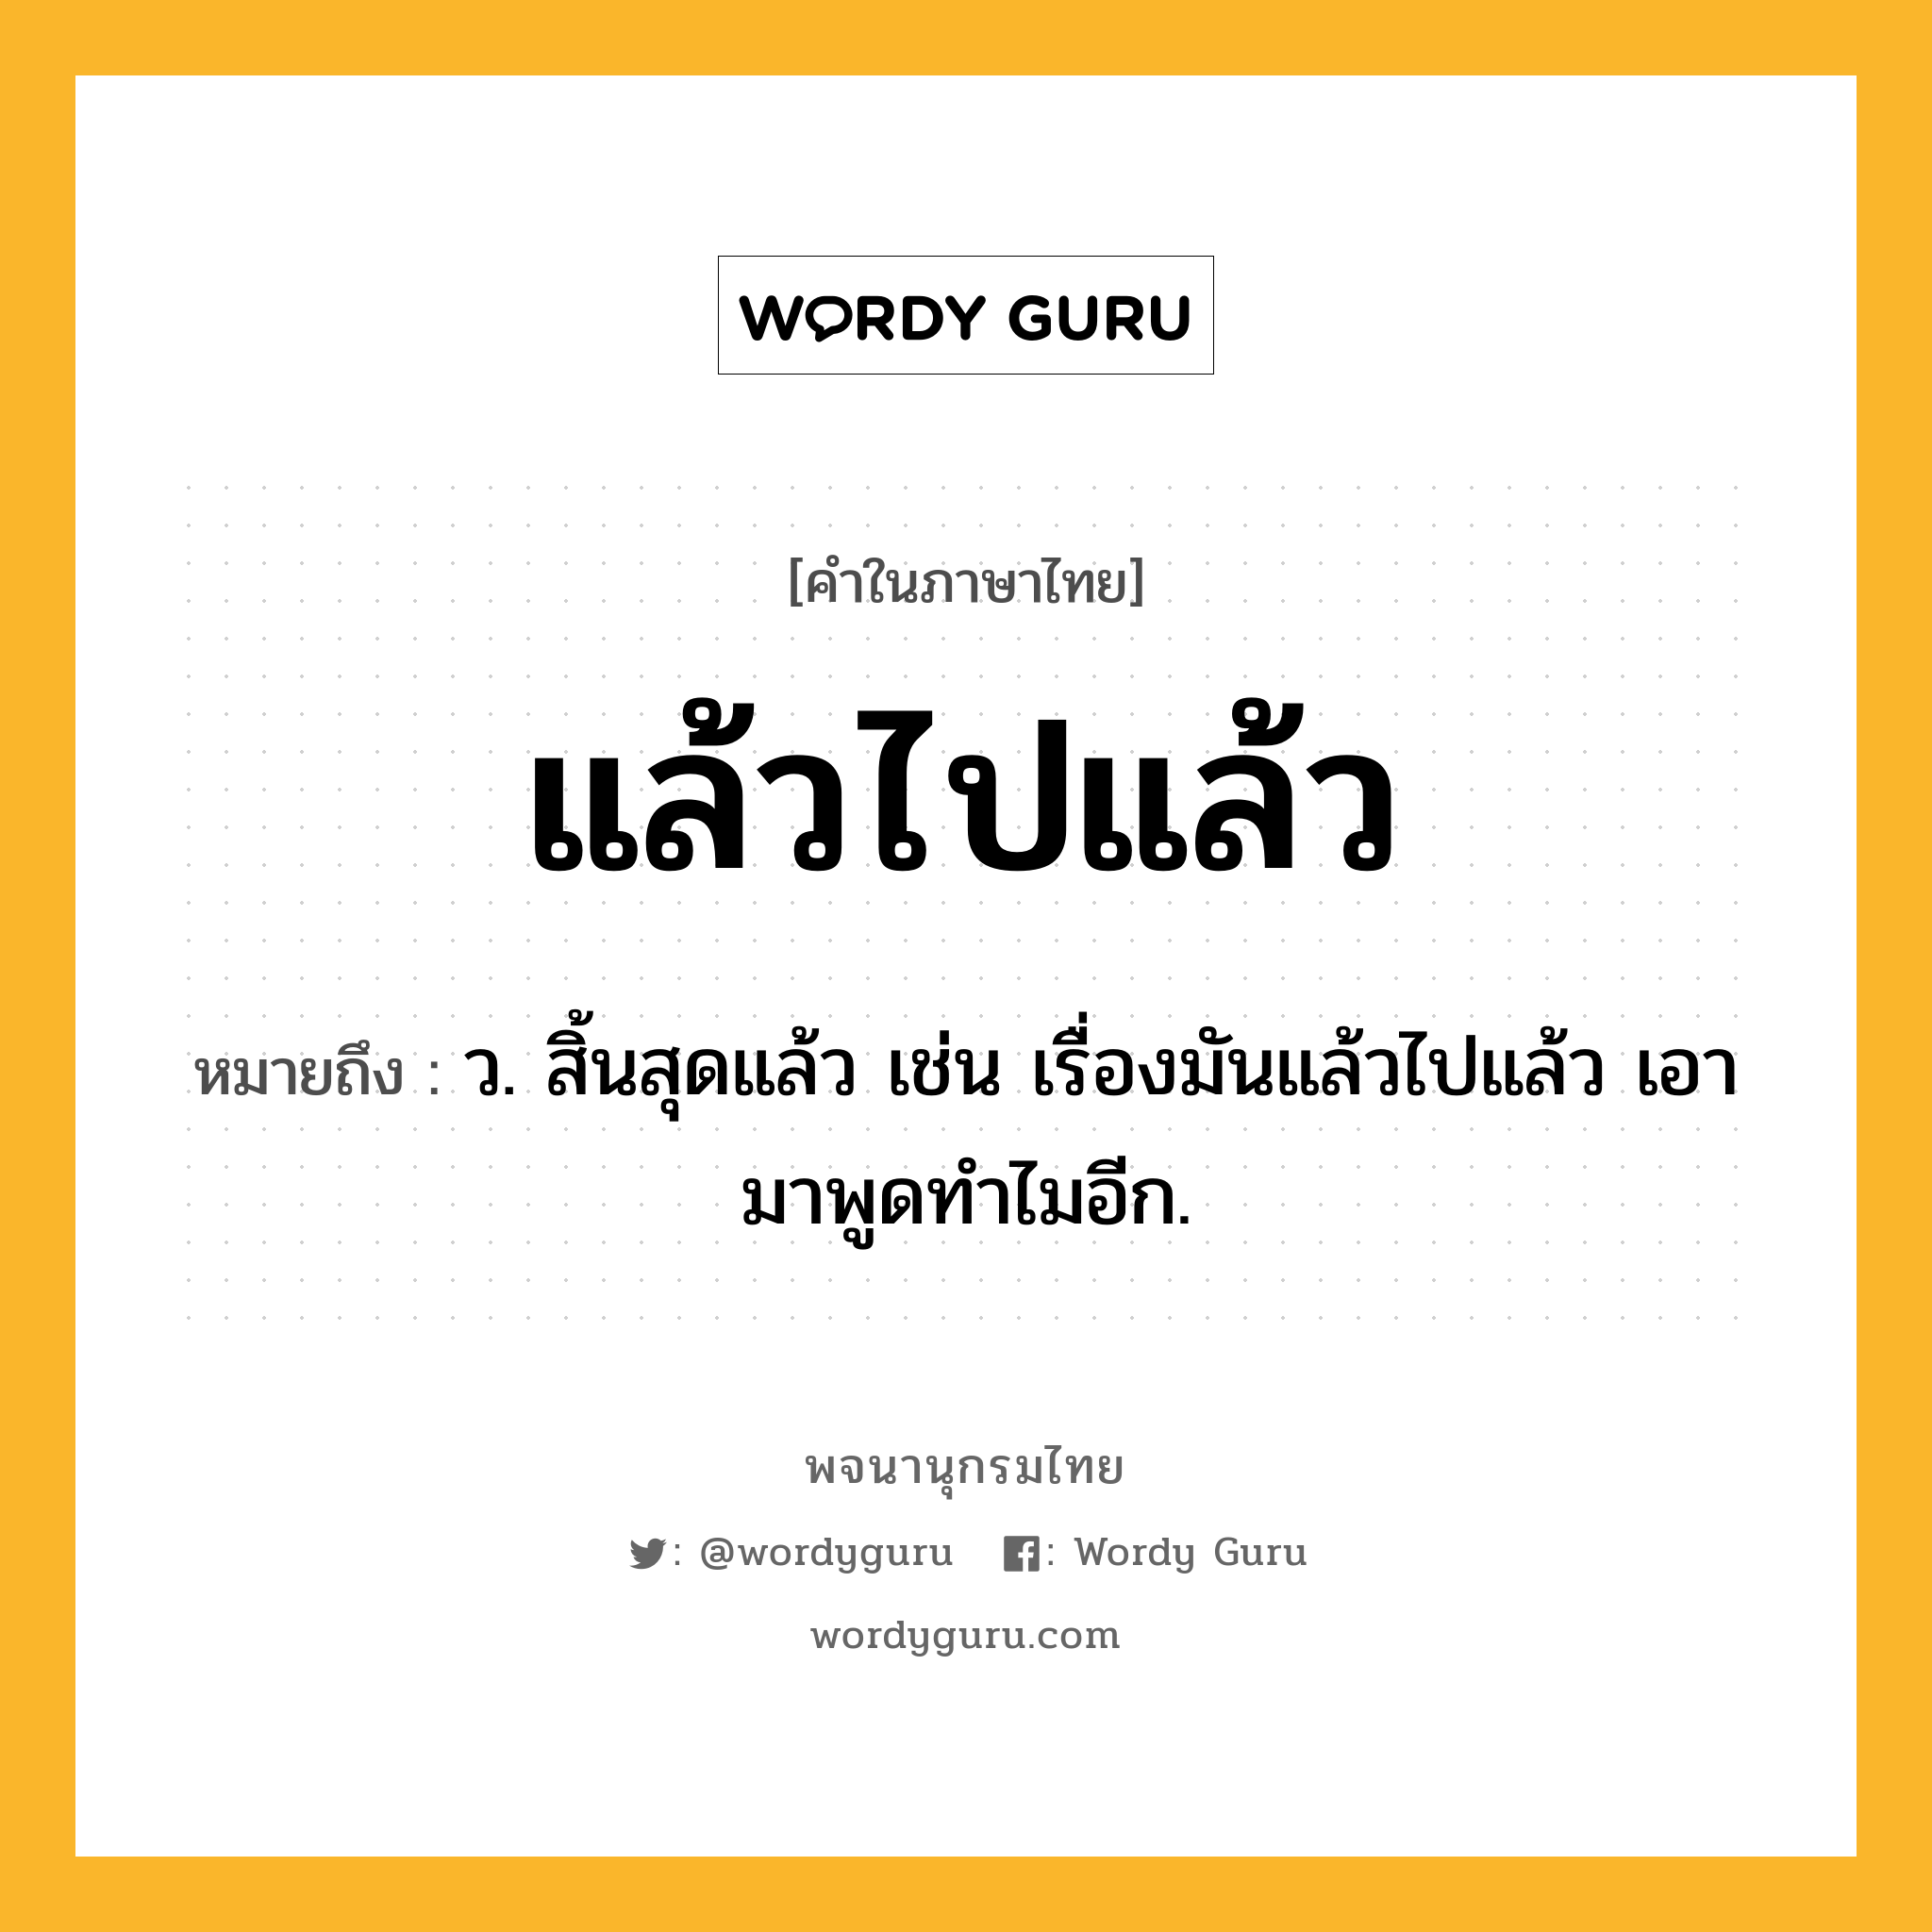 แล้วไปแล้ว หมายถึงอะไร?, คำในภาษาไทย แล้วไปแล้ว หมายถึง ว. สิ้นสุดแล้ว เช่น เรื่องมันแล้วไปแล้ว เอามาพูดทำไมอีก.